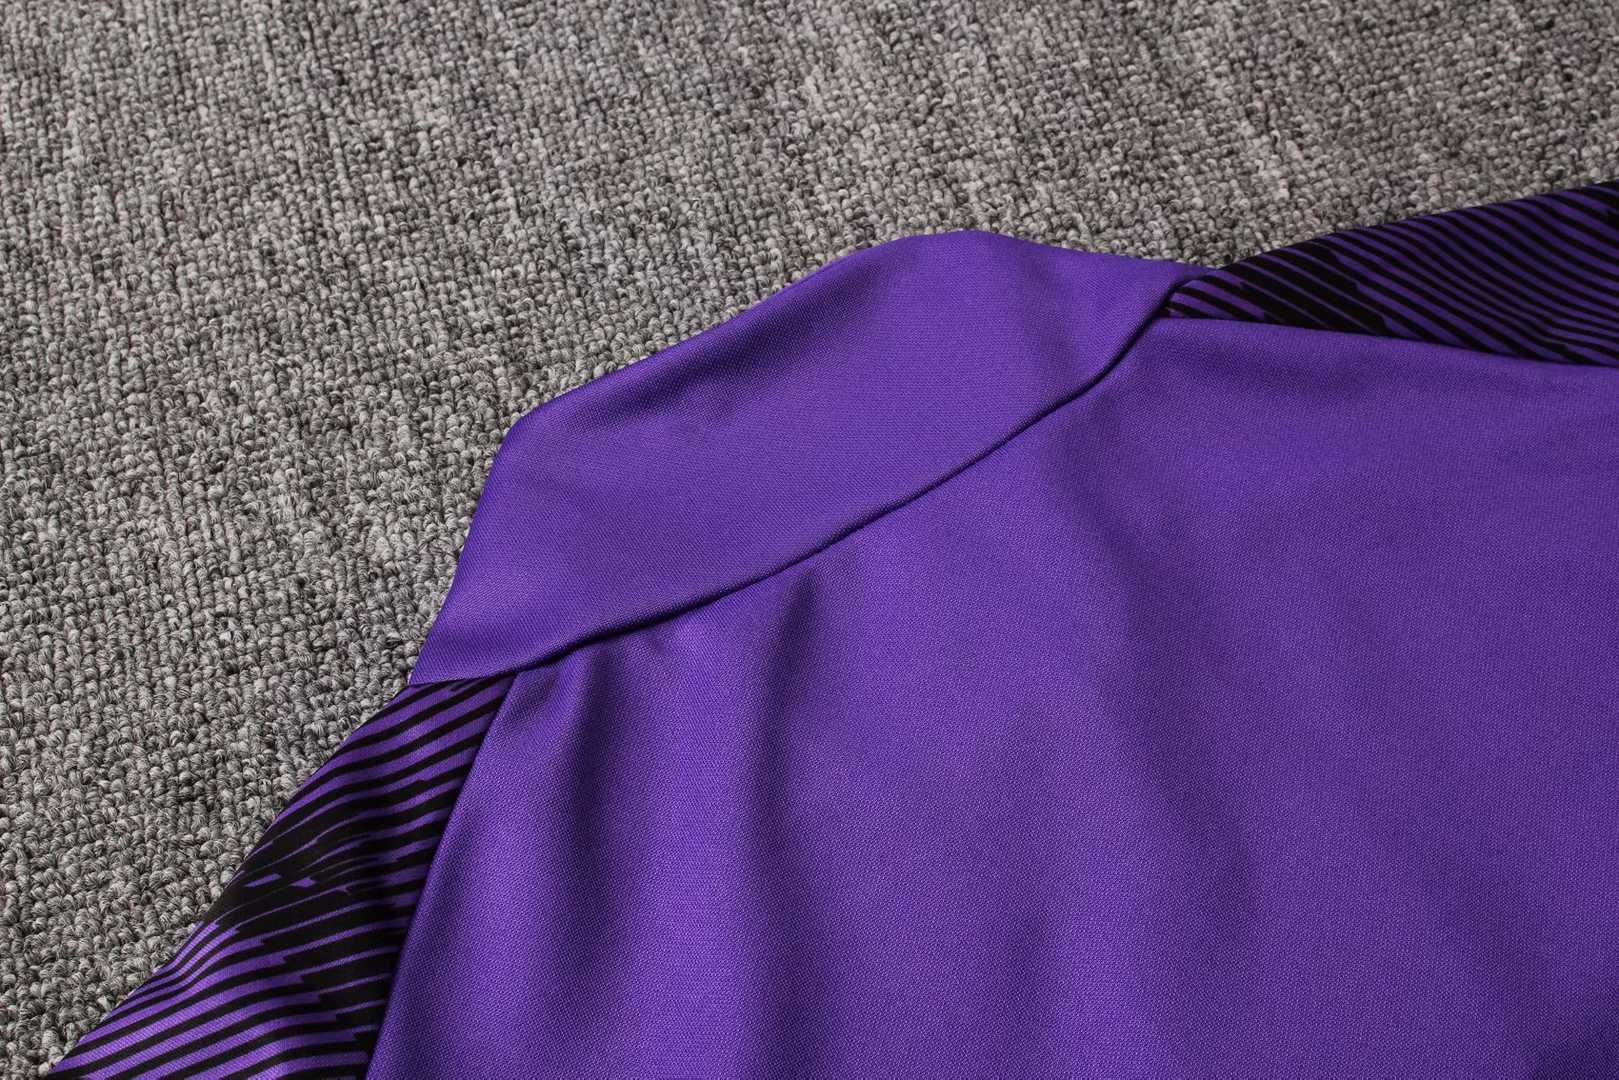 2019/20 Manchester City Purple Mens Soccer Training Suit(Jacket + Pants)